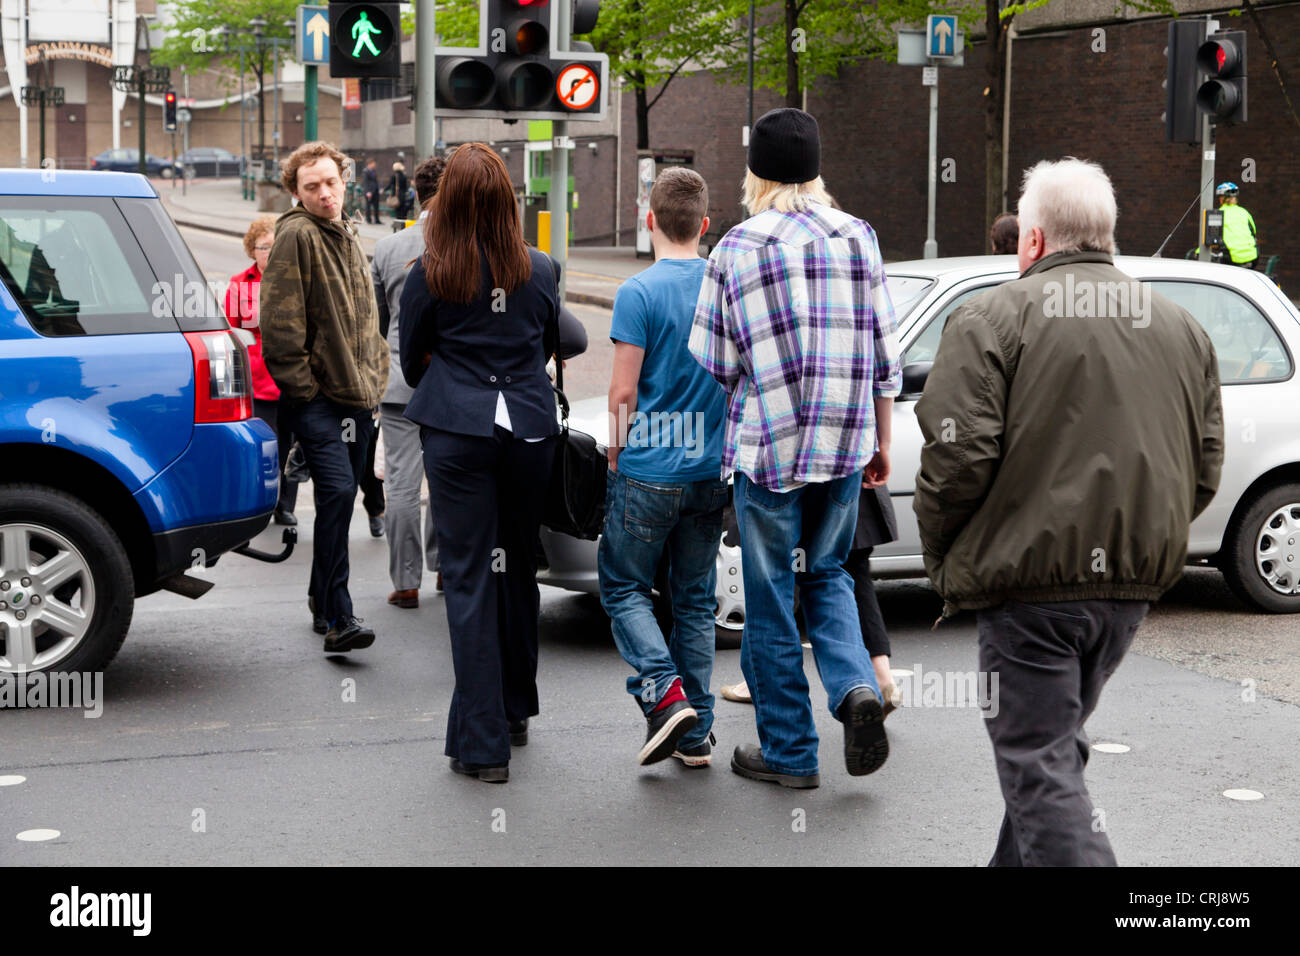 Blocca il traffico attraverso un passaggio pedonale su una strada mentre il verde luce uomo mostra, causando la gente a piedi tra le vetture. Nottingham, Inghilterra, Regno Unito Foto Stock